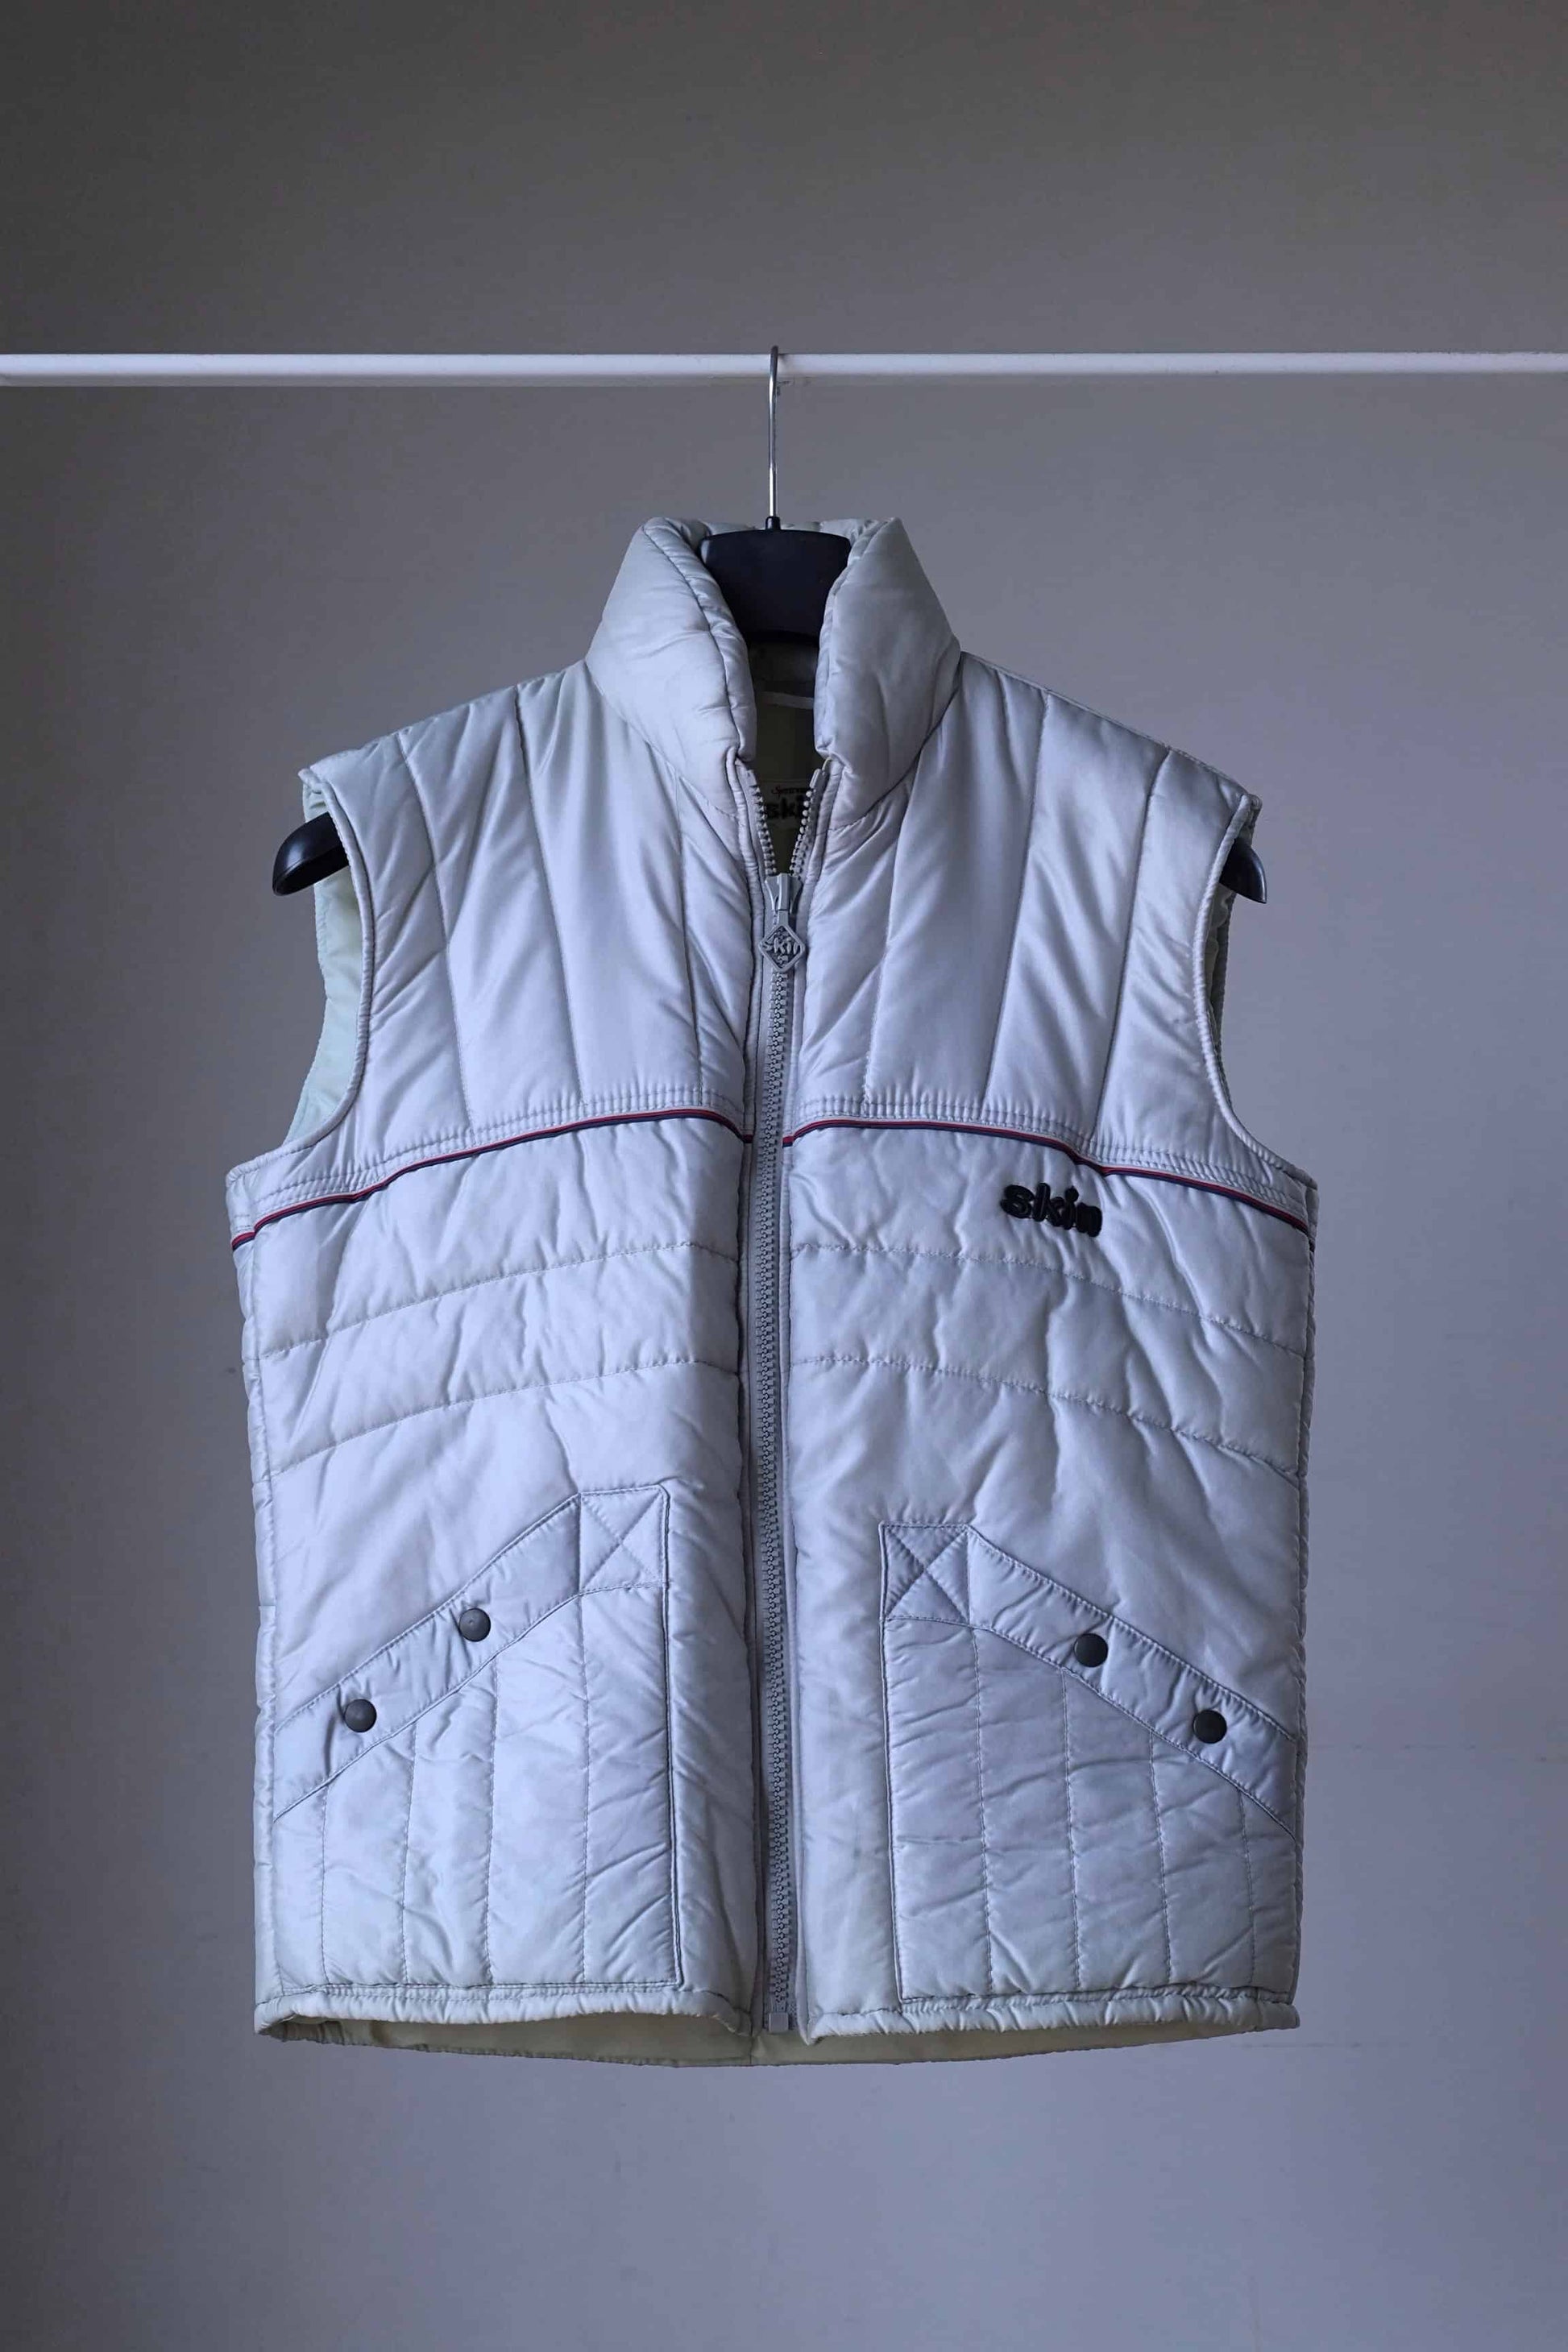 Vintage 80's Ski Vest